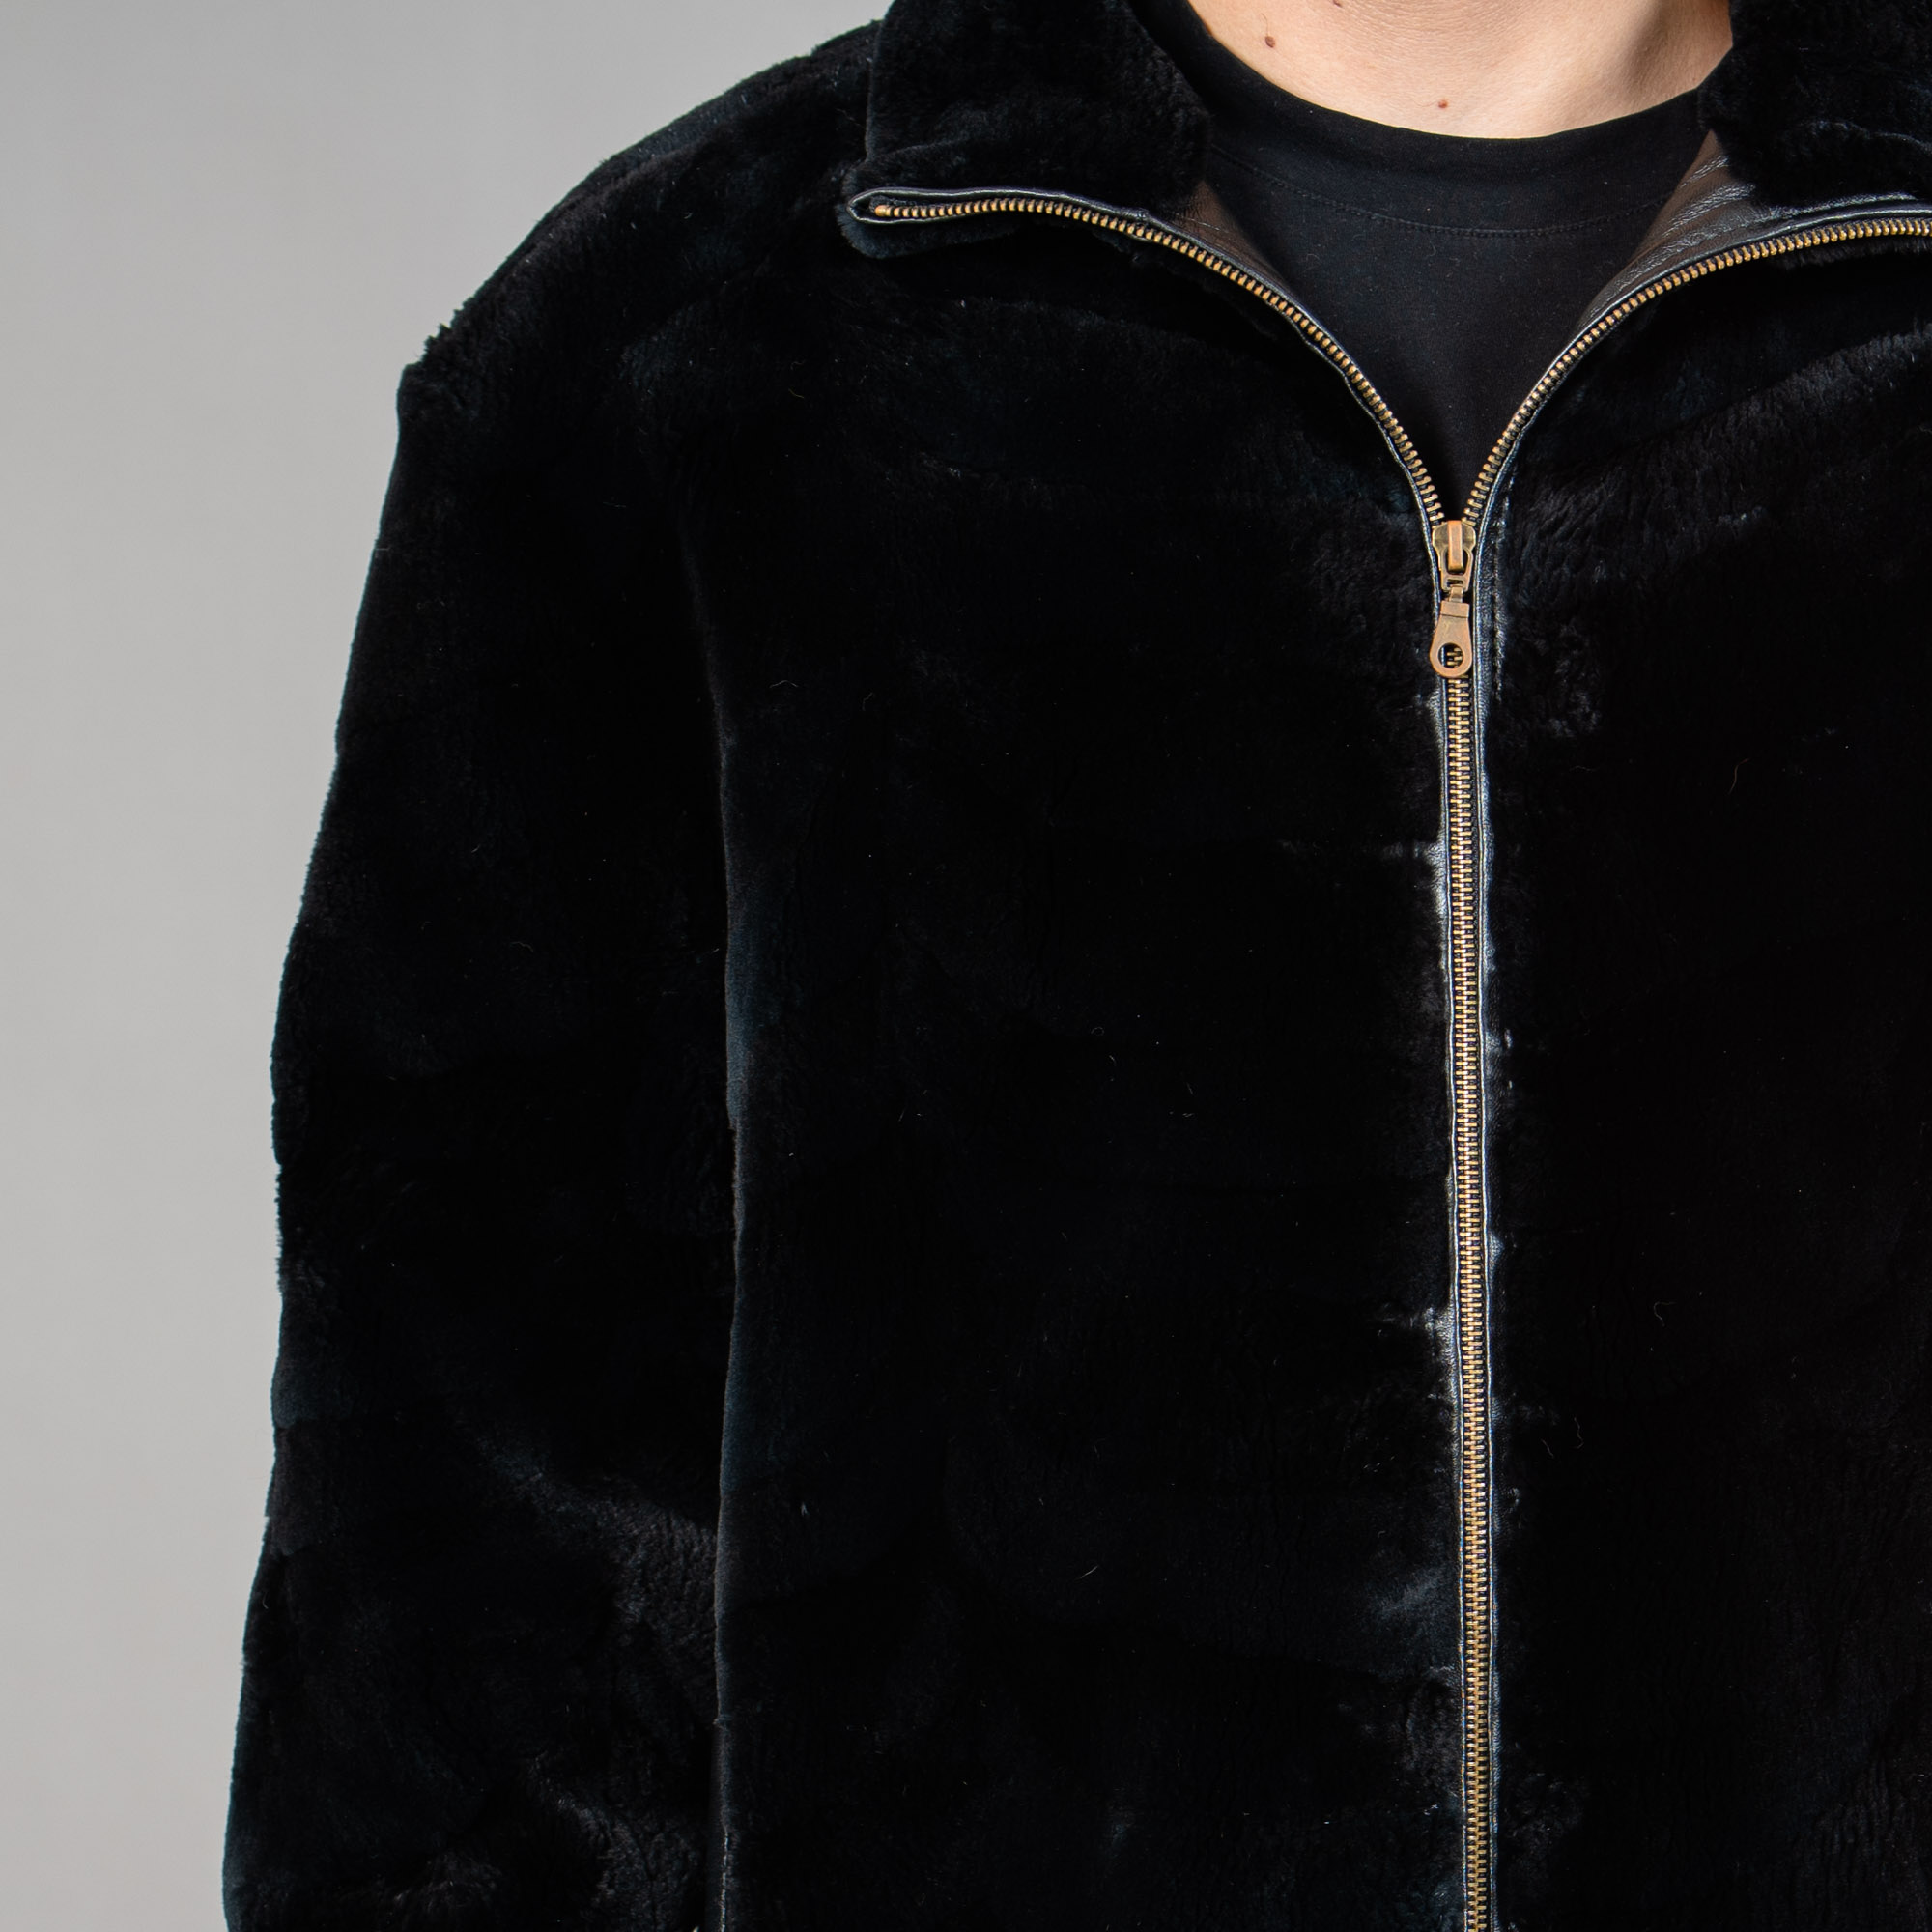 Beaver fur jacket in black color